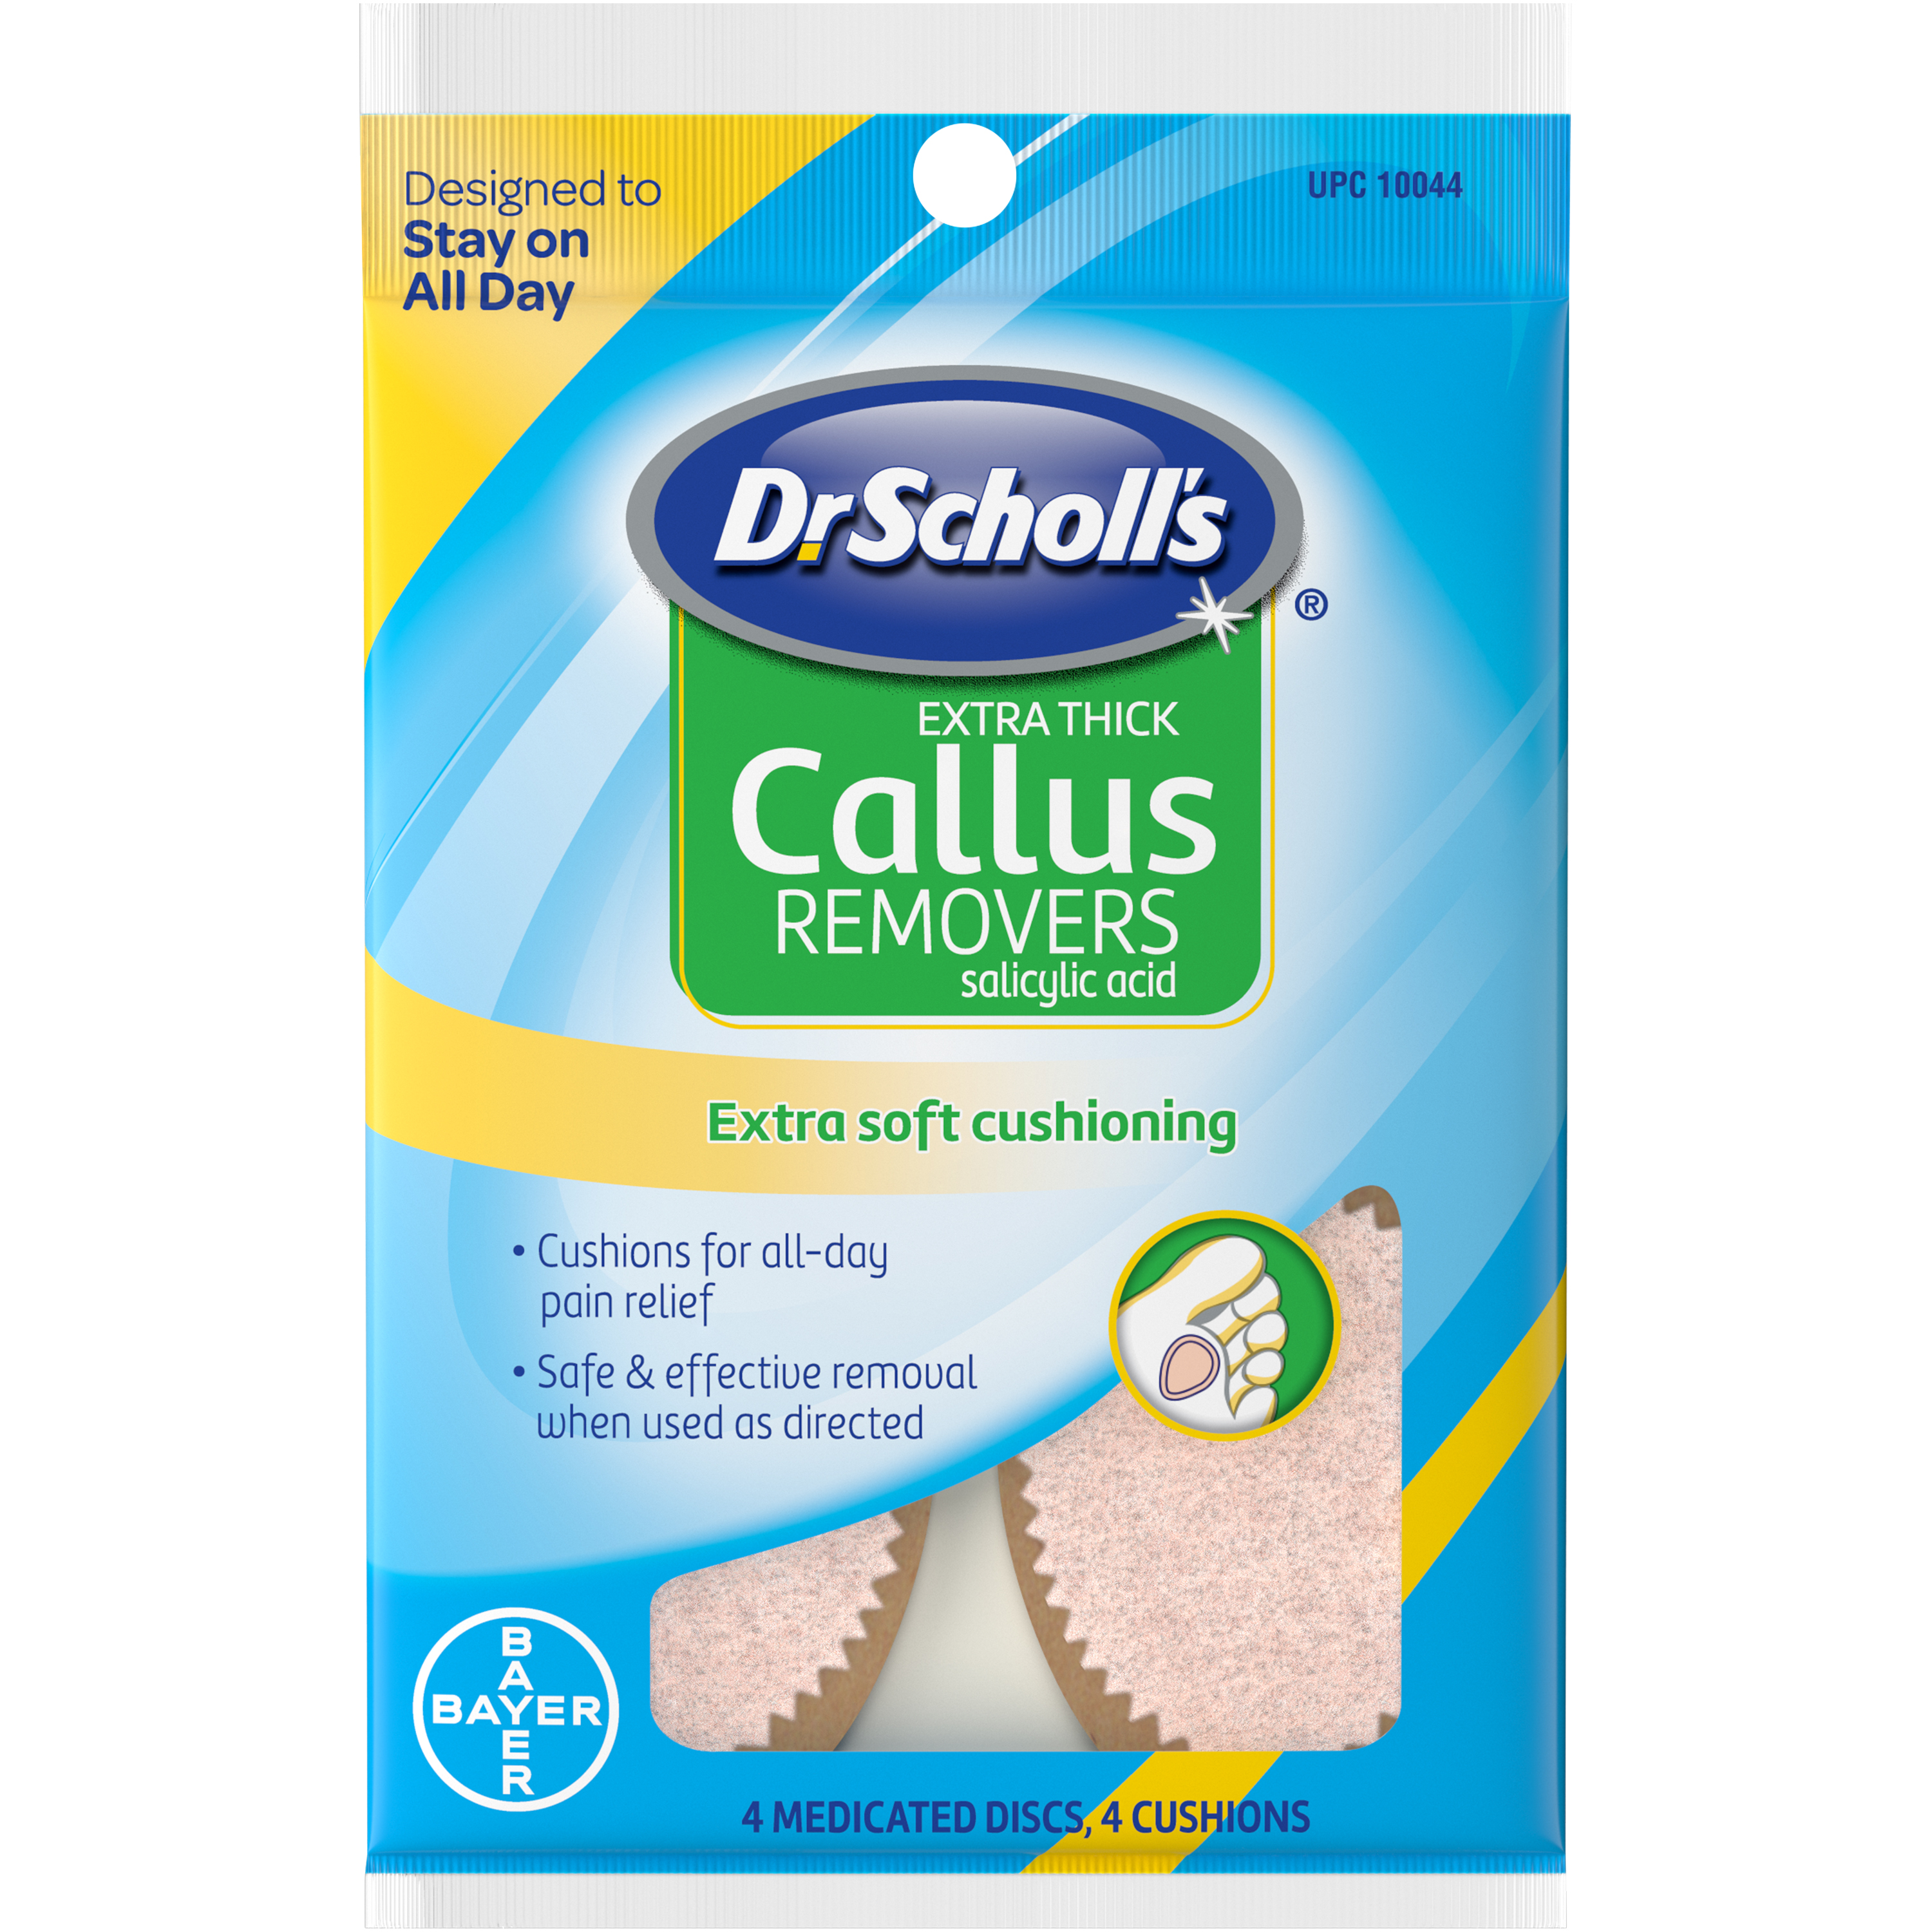 dr scholl's callus